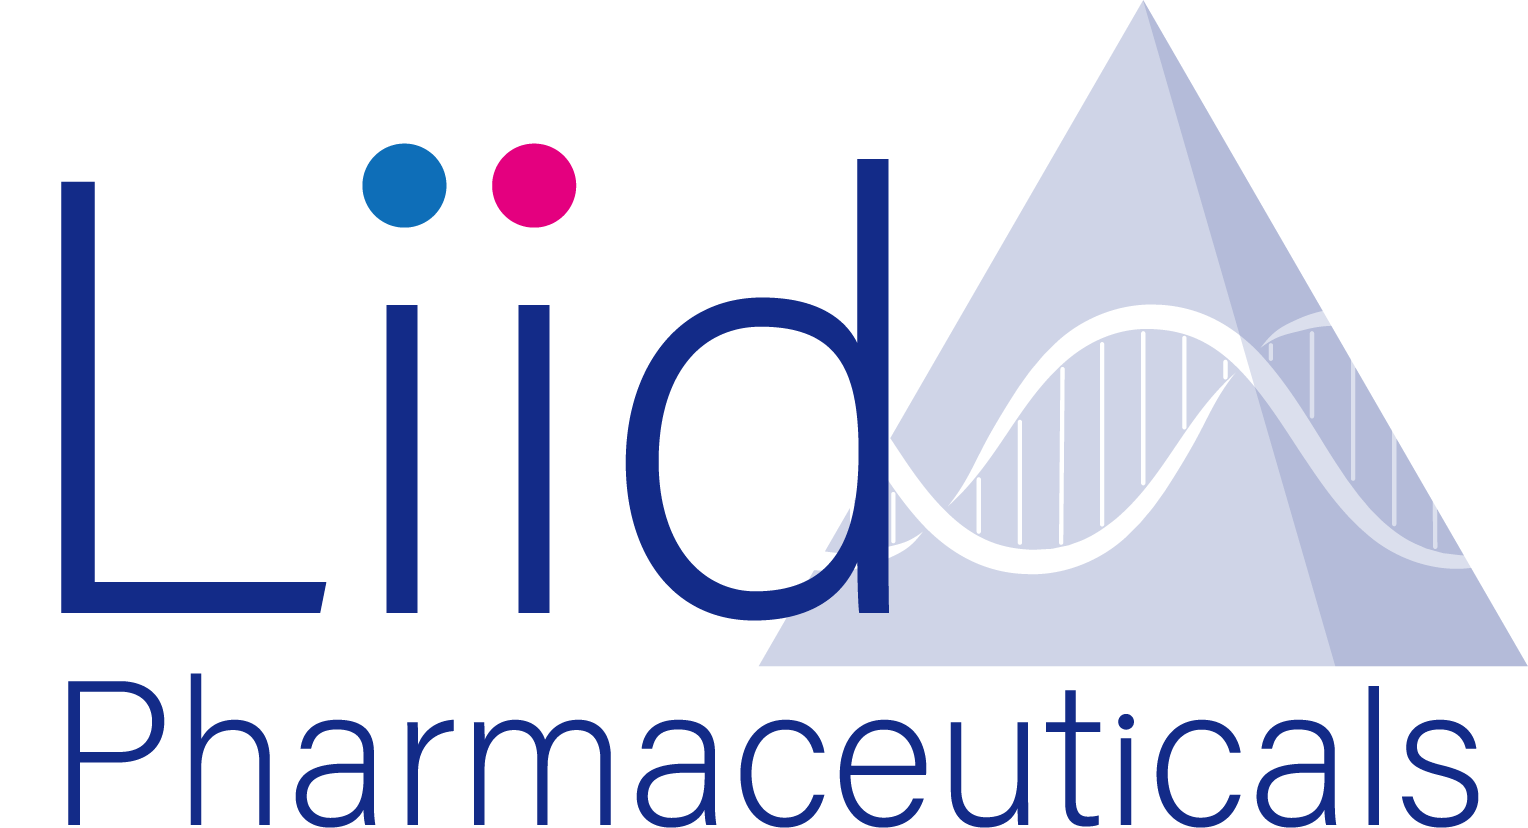 Liid Pharmaceuticals, Inc.